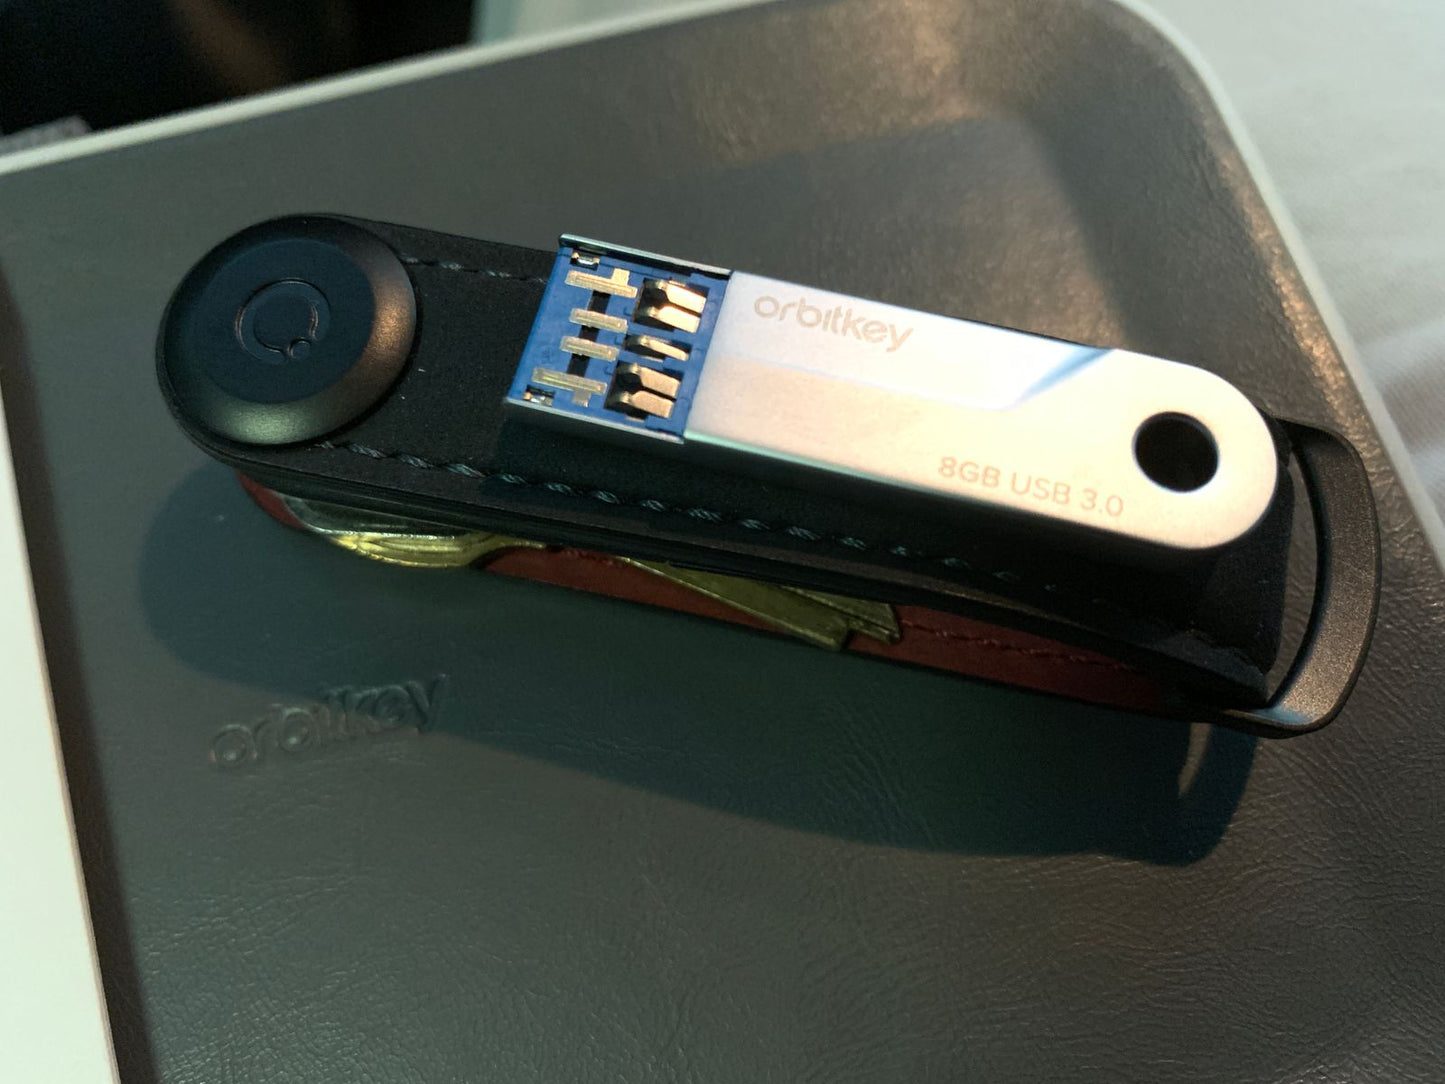 
                  
                    ORBITKEY USB 3.0 8 GB Schlüssel-Organizer
                  
                